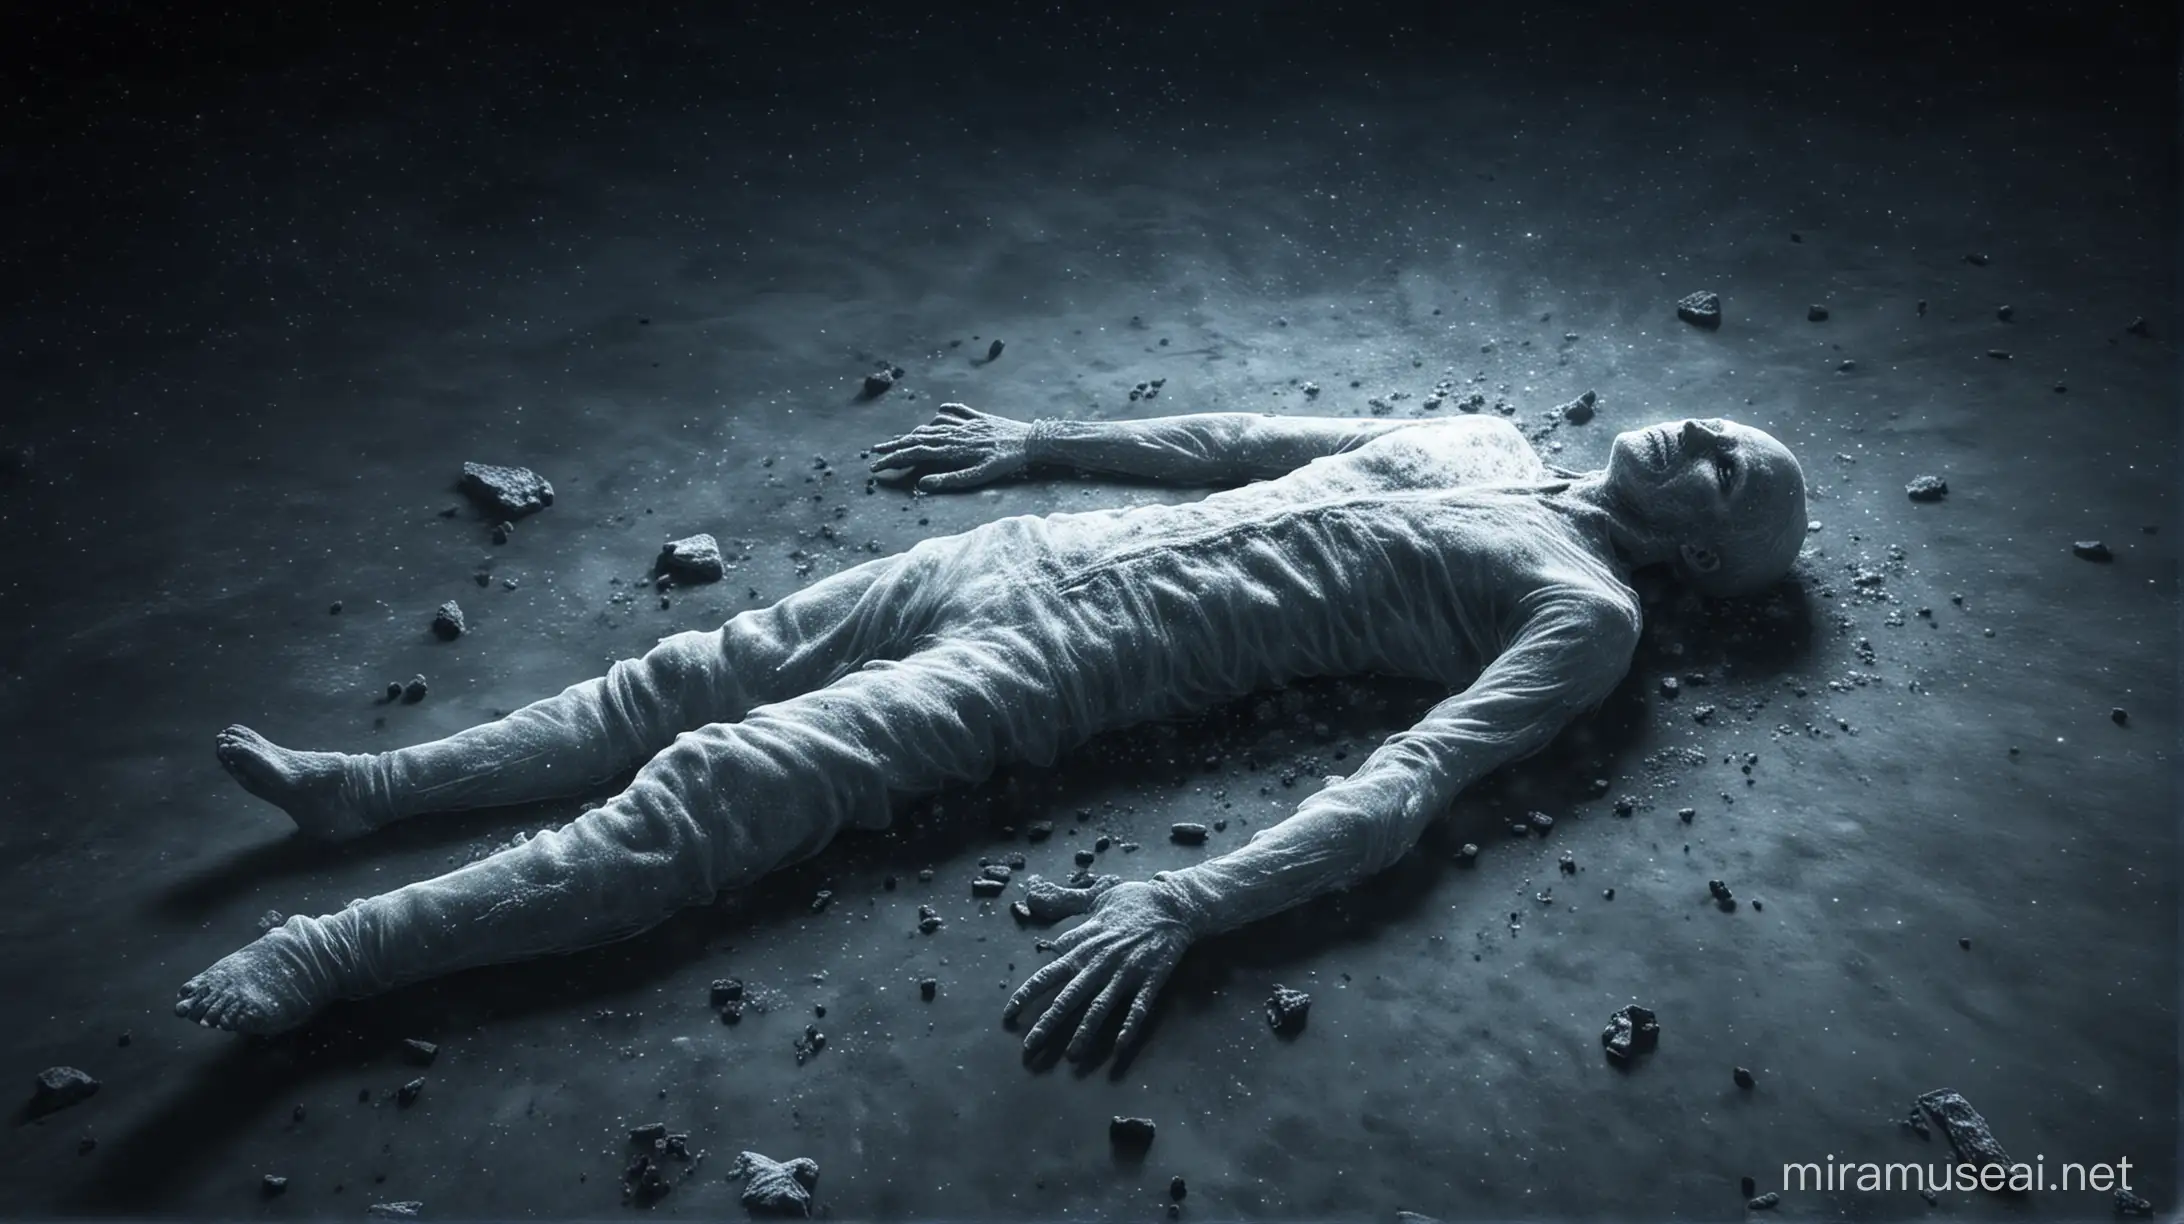 Frozen Dead Body Floating in Space